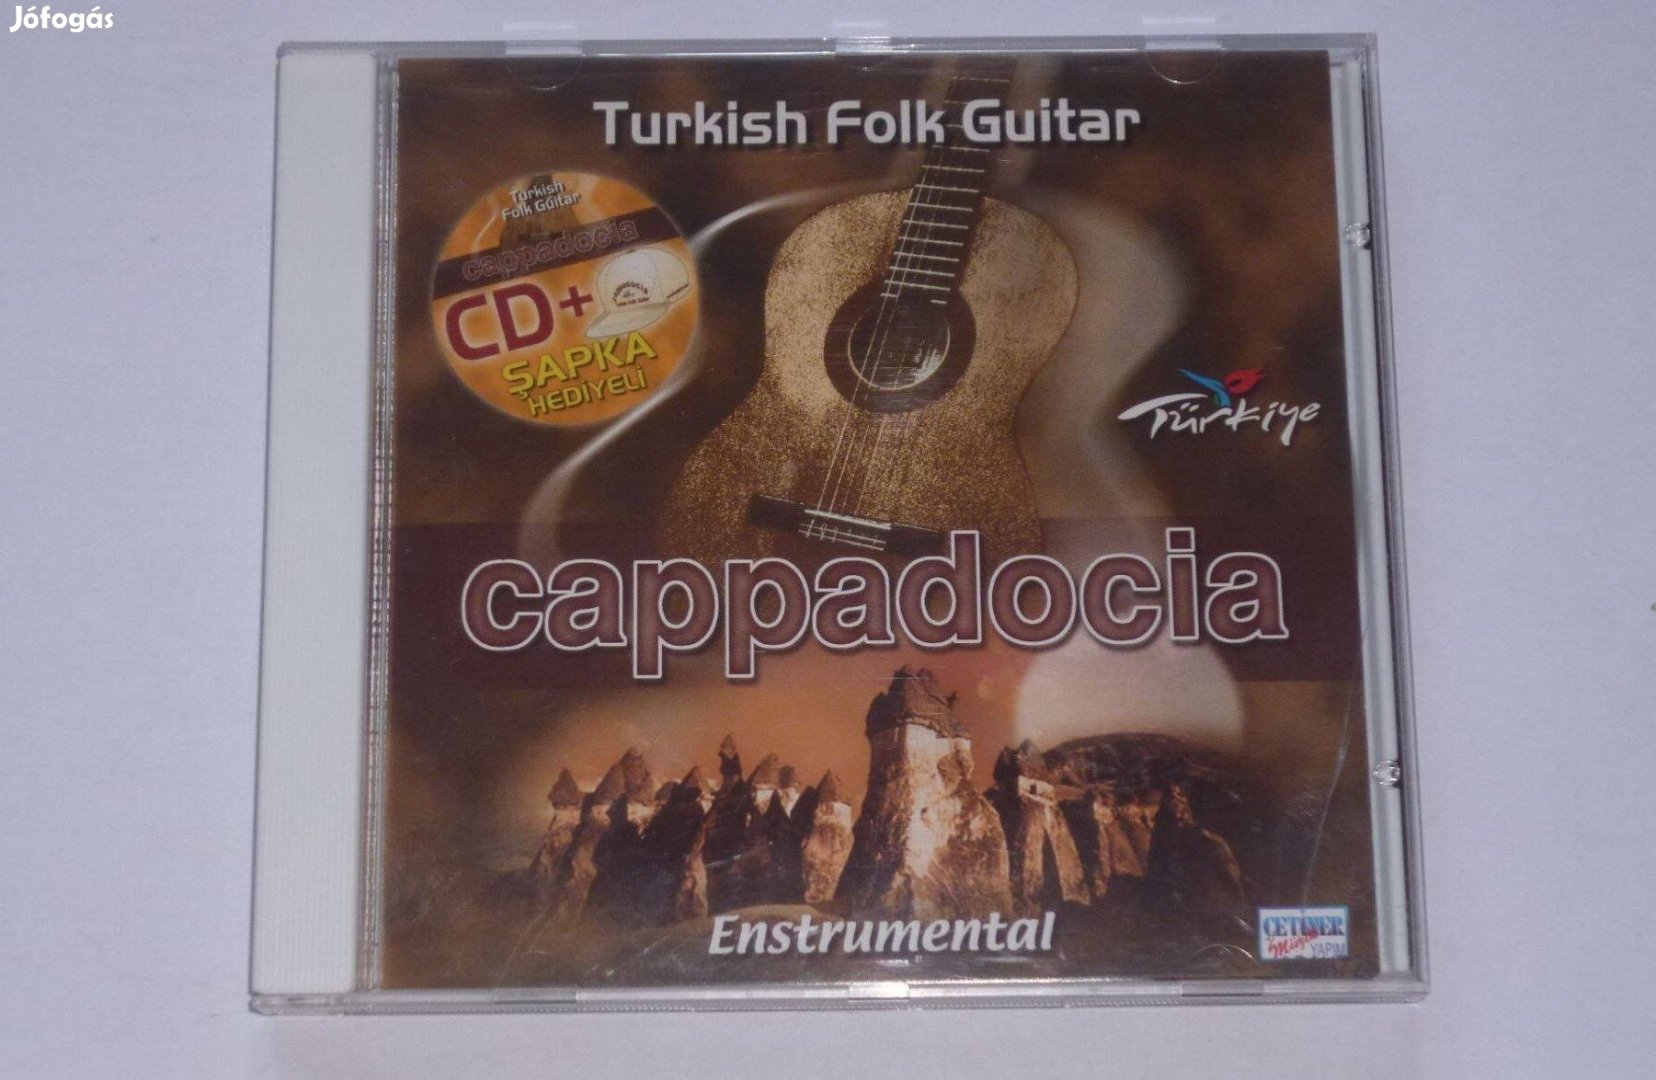 Various Cappadocia (Turkish Folk Guitar - Enstrumental) CD